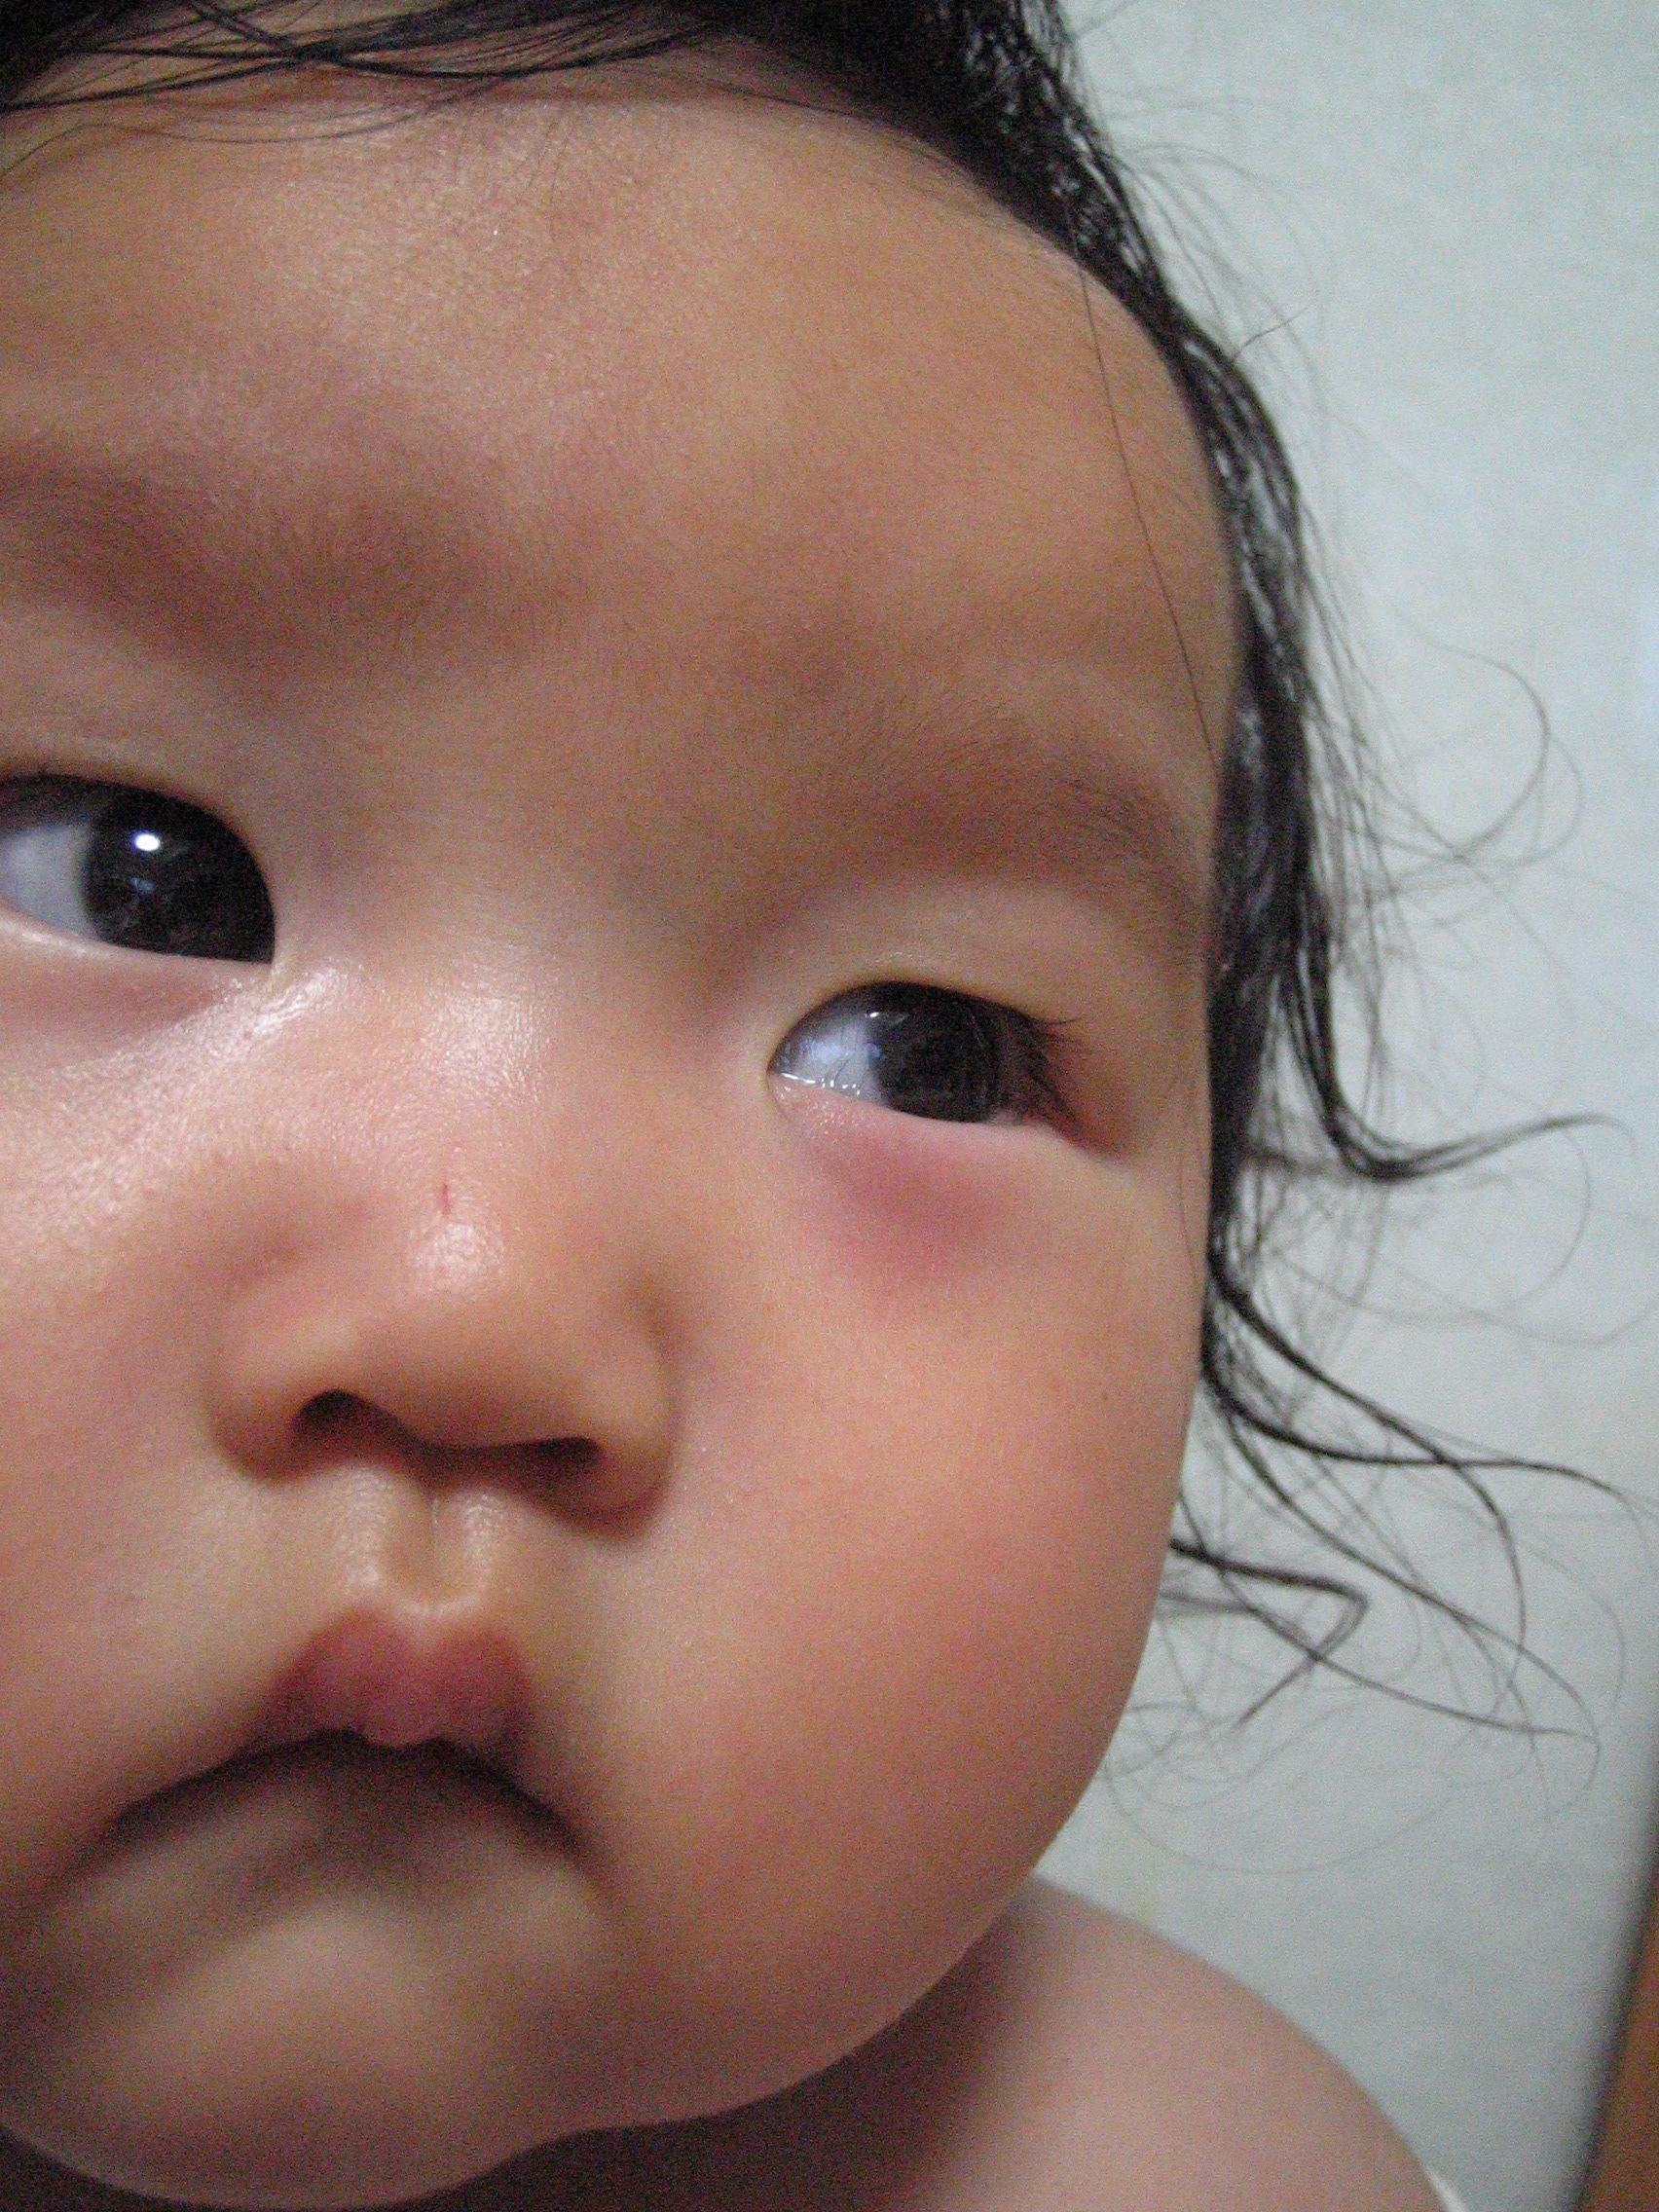 赤ちゃん 目の下 赤い 712038赤ちゃん 目の下 赤い点 Joshimagesugo